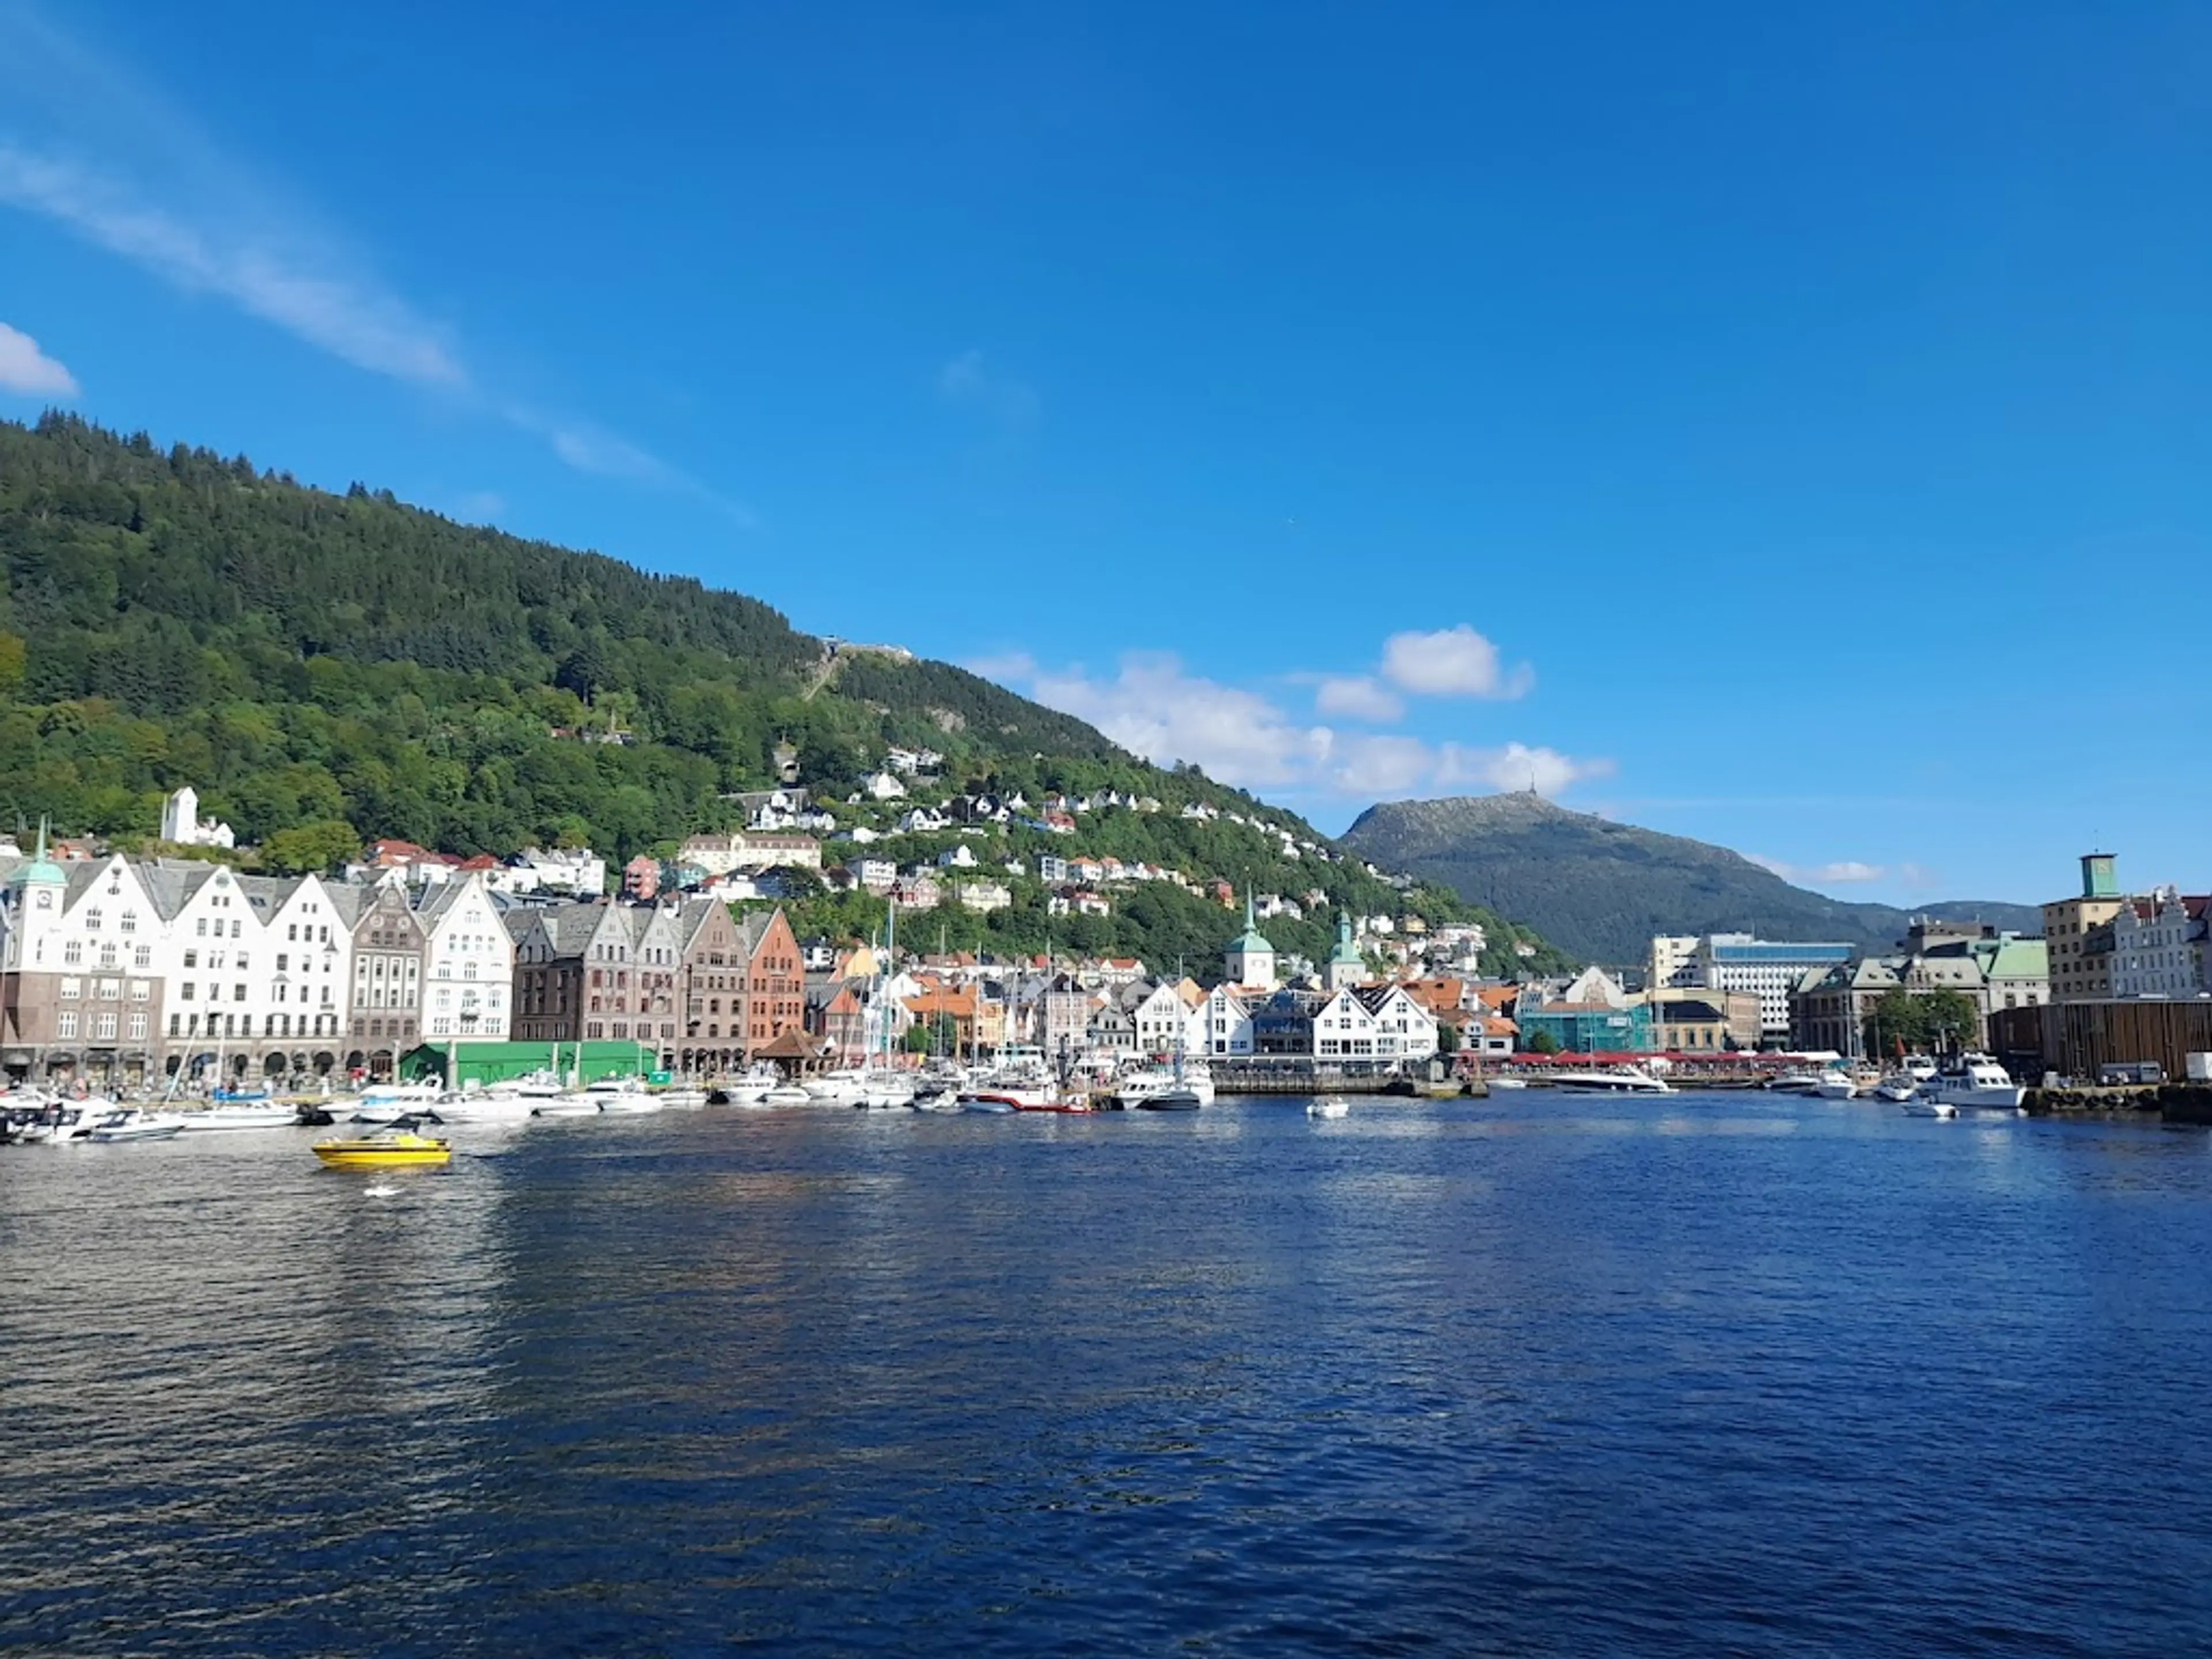 Bergen's historic harbor